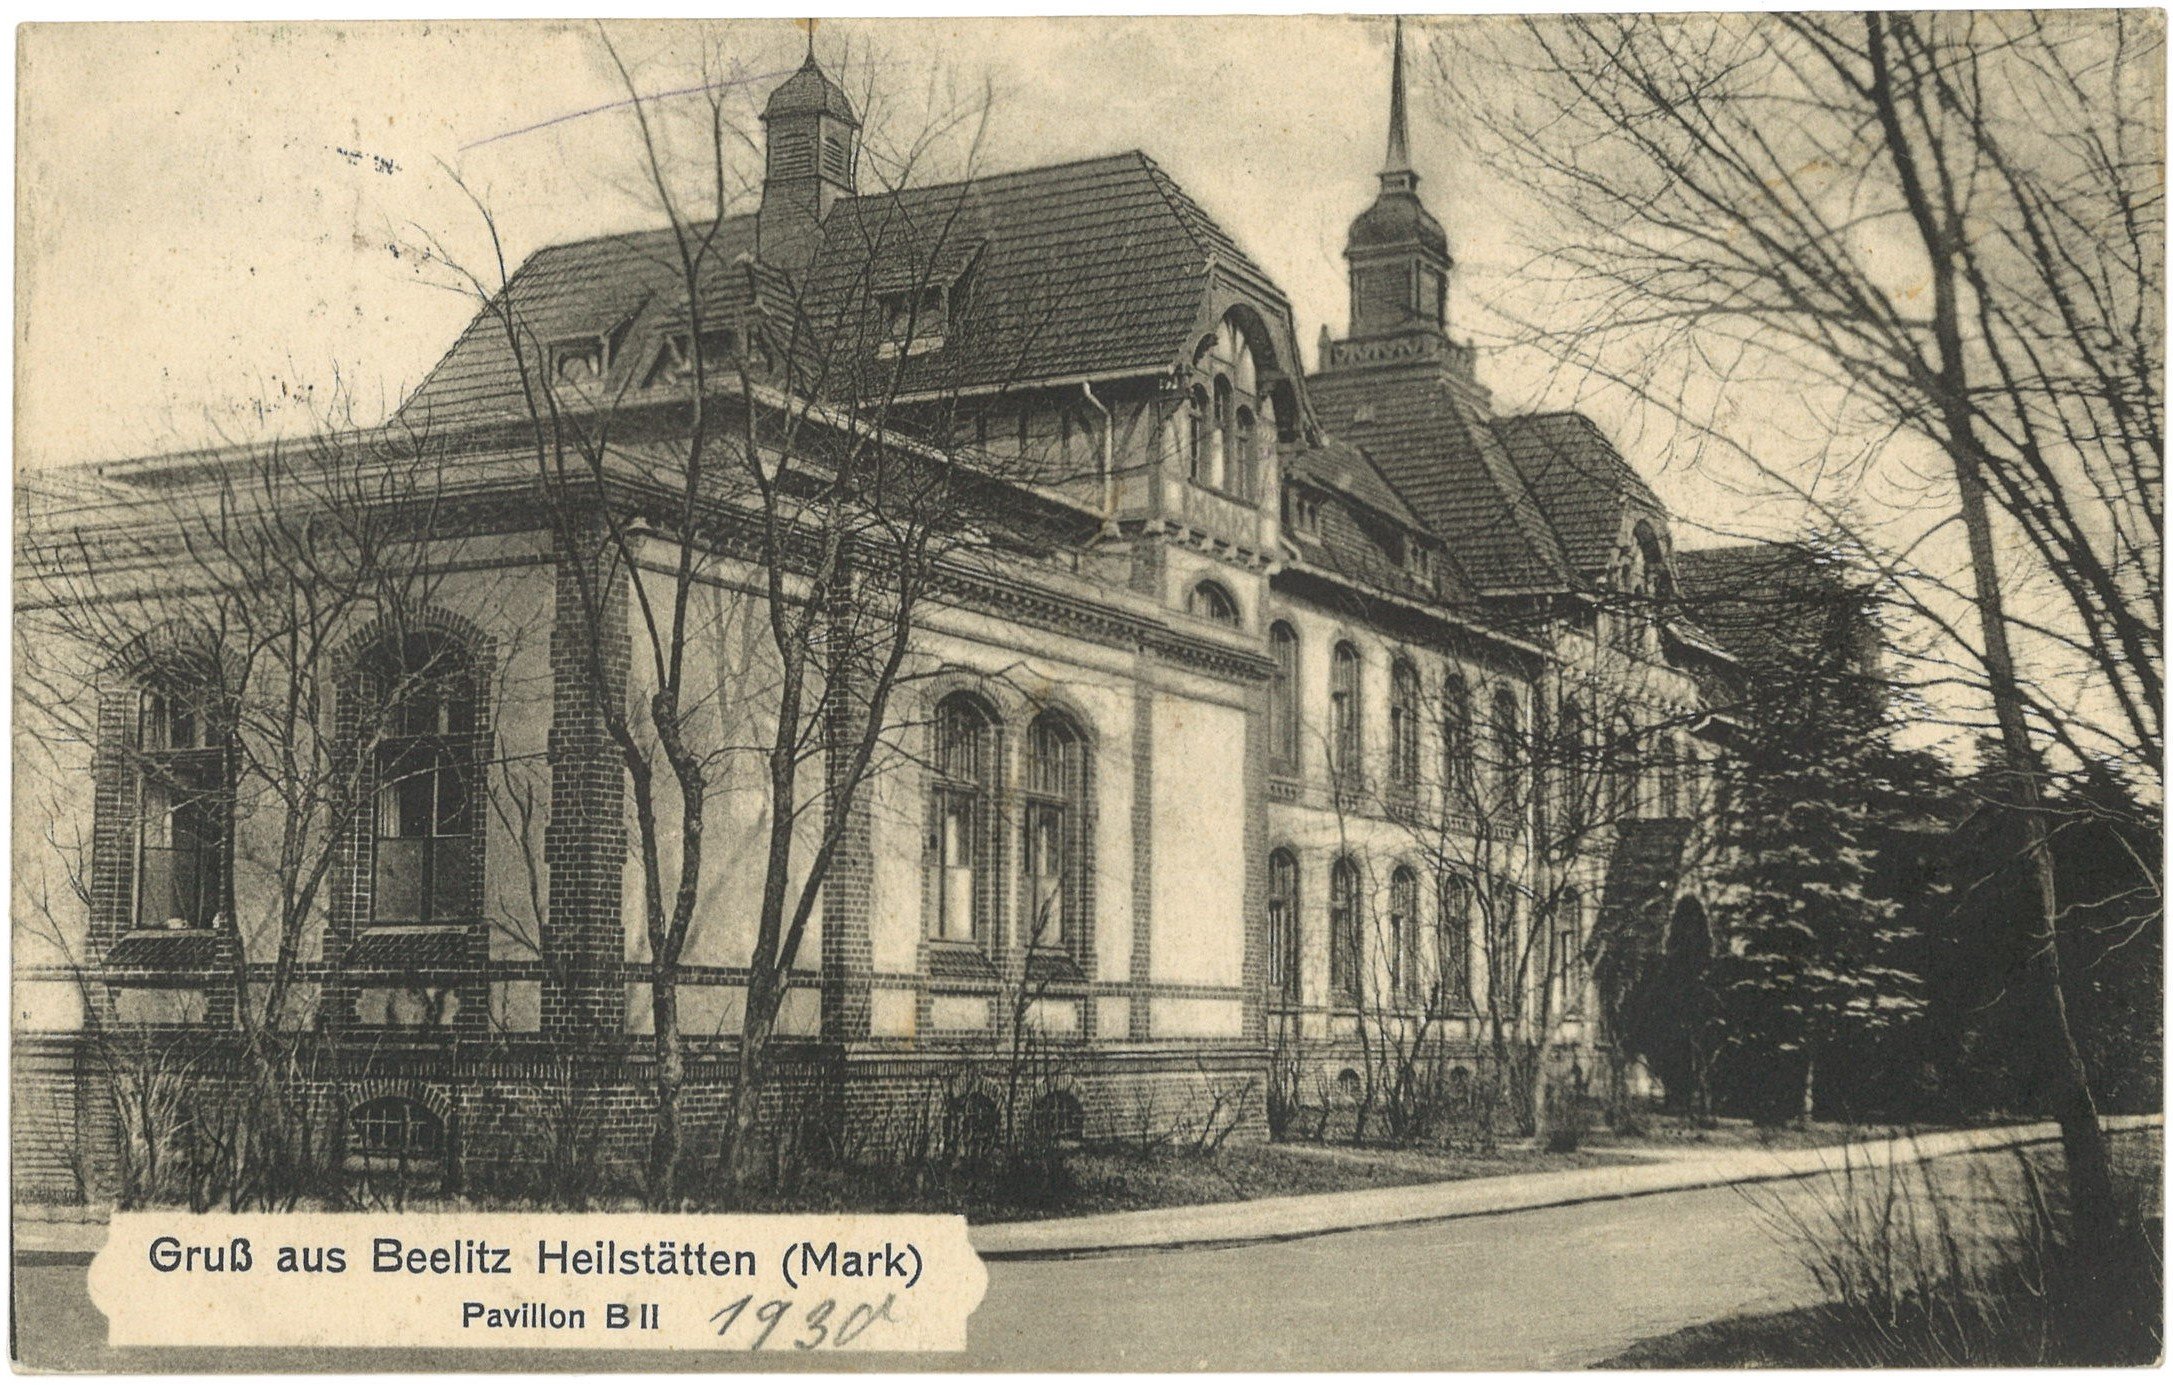 Beelitz-Heilstätten: Pavillon B II (Landesgeschichtliche Vereinigung für die Mark Brandenburg e.V. CC BY)